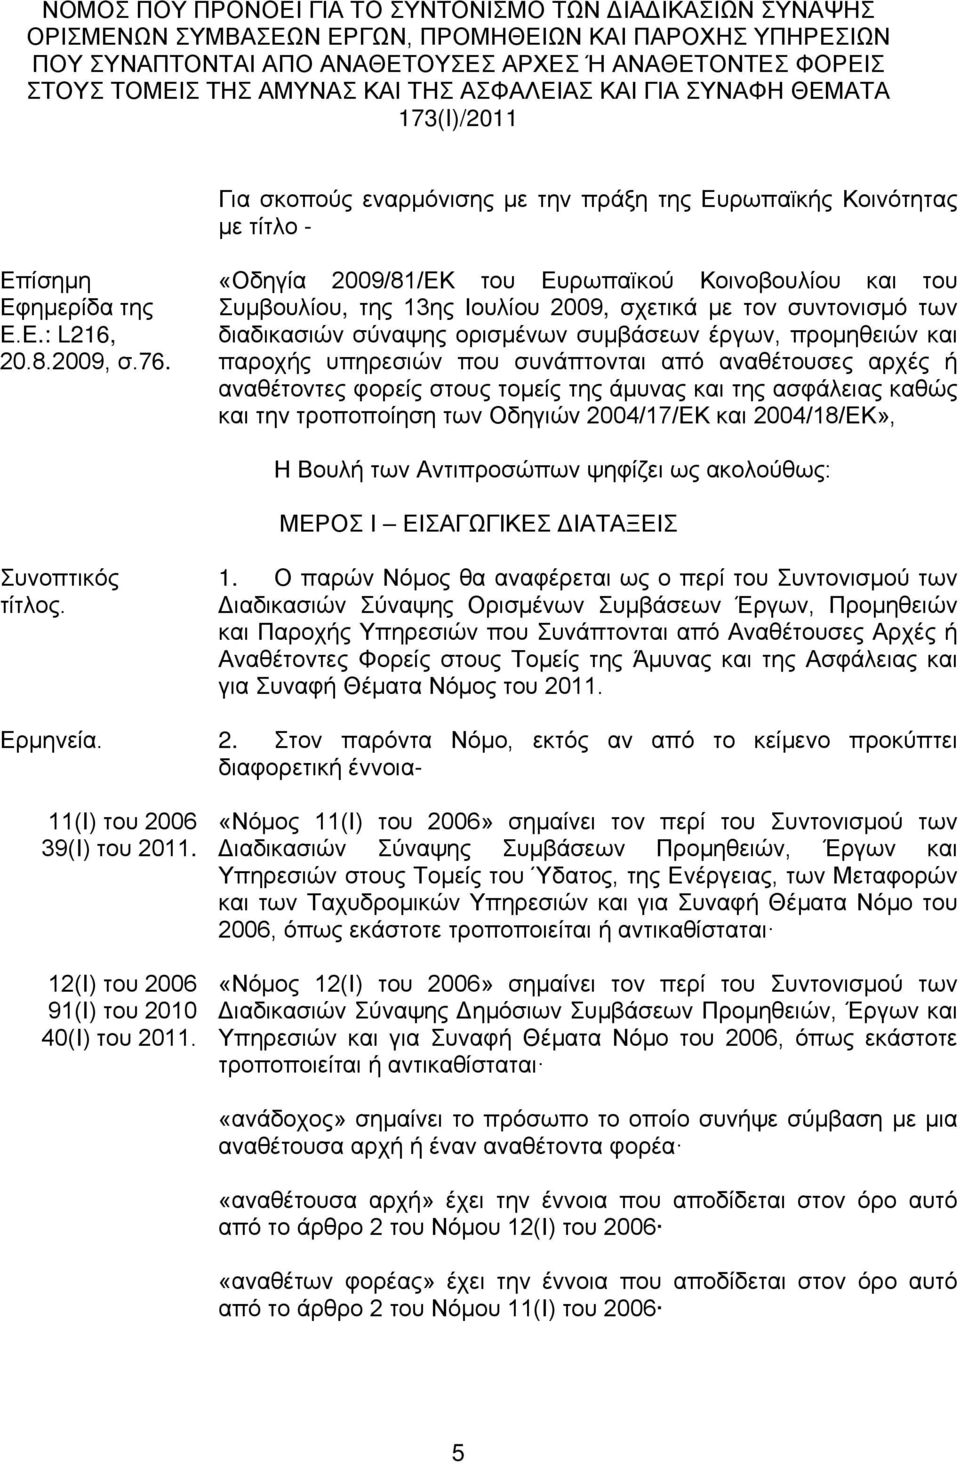 «Οδηγία 2009/81/ΕΚ του Ευρωπαϊκού Κοινοβουλίου και του Συμβουλίου, της 13ης Ιουλίου 2009, σχετικά με τον συντονισμό των διαδικασιών σύναψης ορισμένων συμβάσεων έργων, προμηθειών και παροχής υπηρεσιών